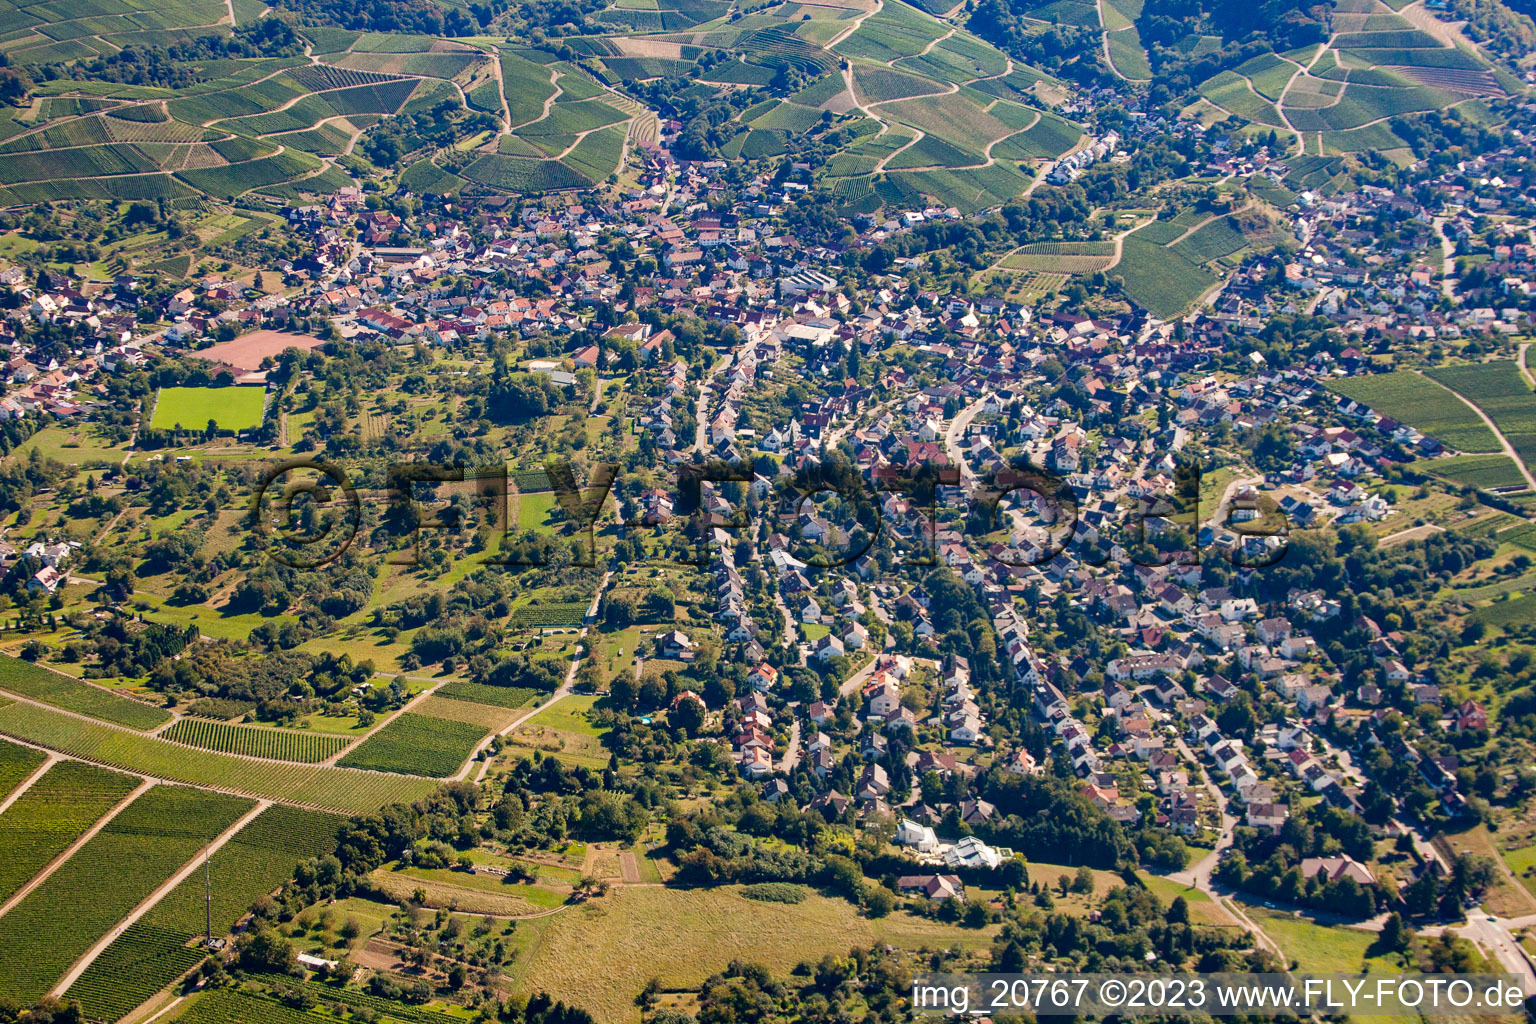 Vue aérienne de Quartier Weierbach in Offenburg dans le département Bade-Wurtemberg, Allemagne